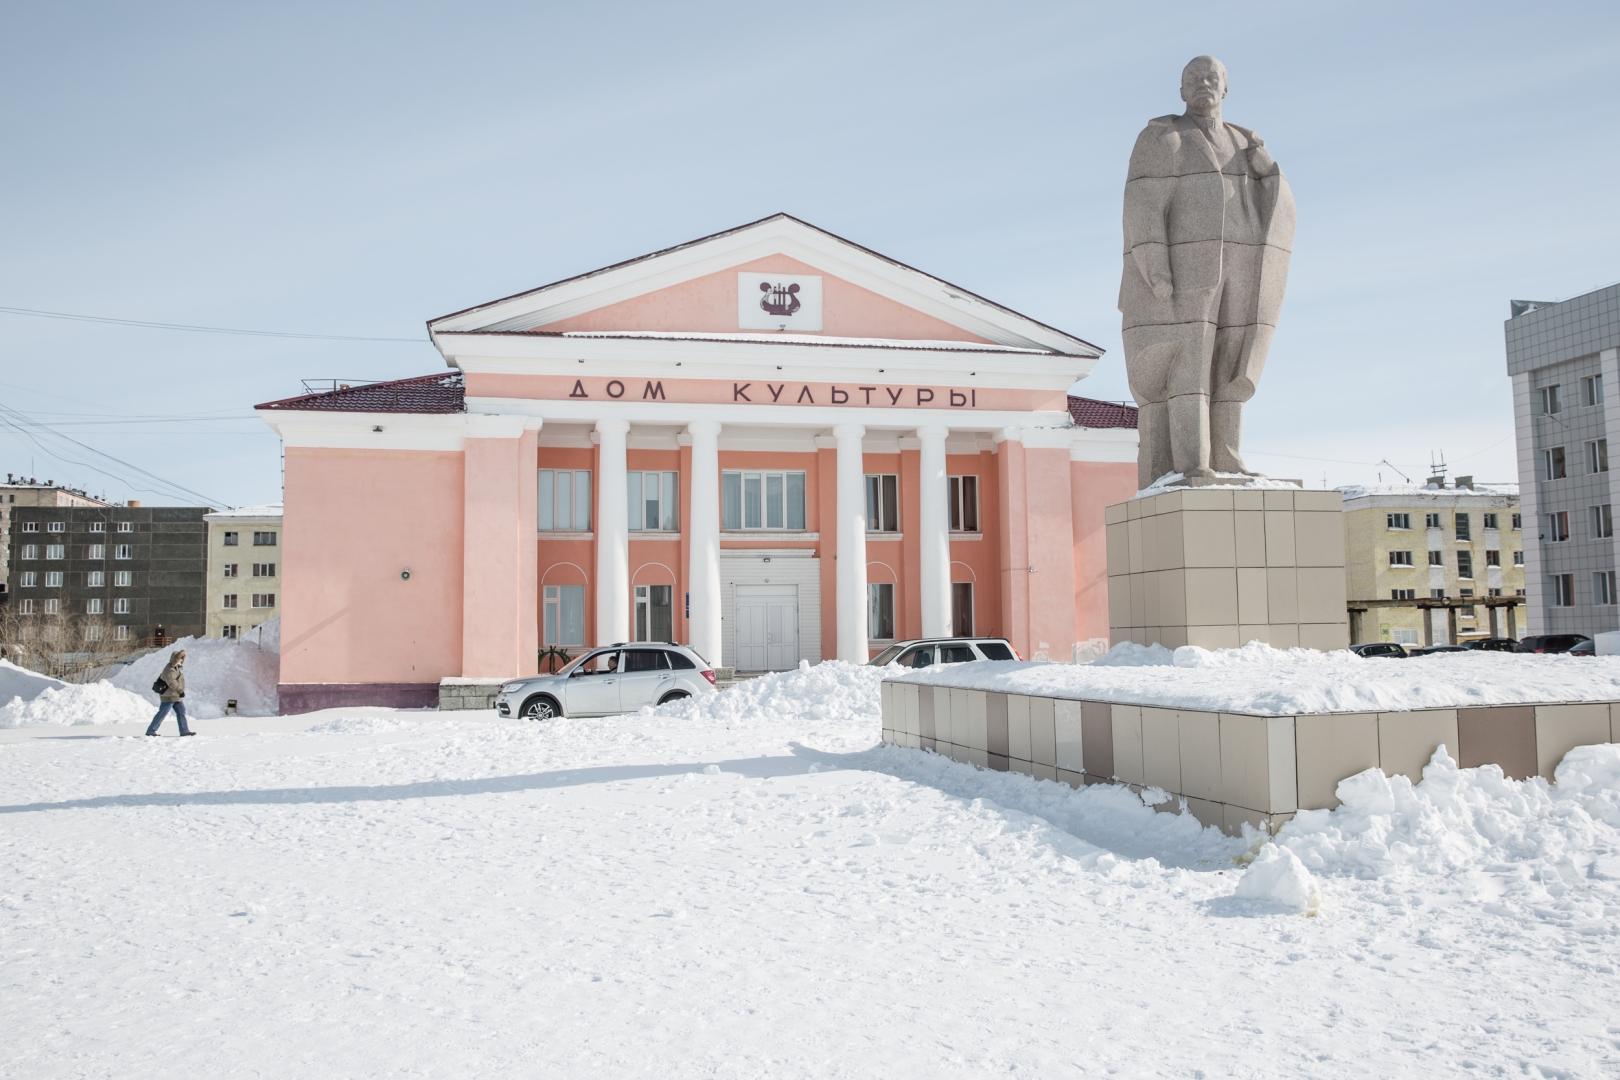 В Дудинке, как и в большинстве российских городов, есть памятник Владимиру Ленину. На заднем плане — Дом культуры